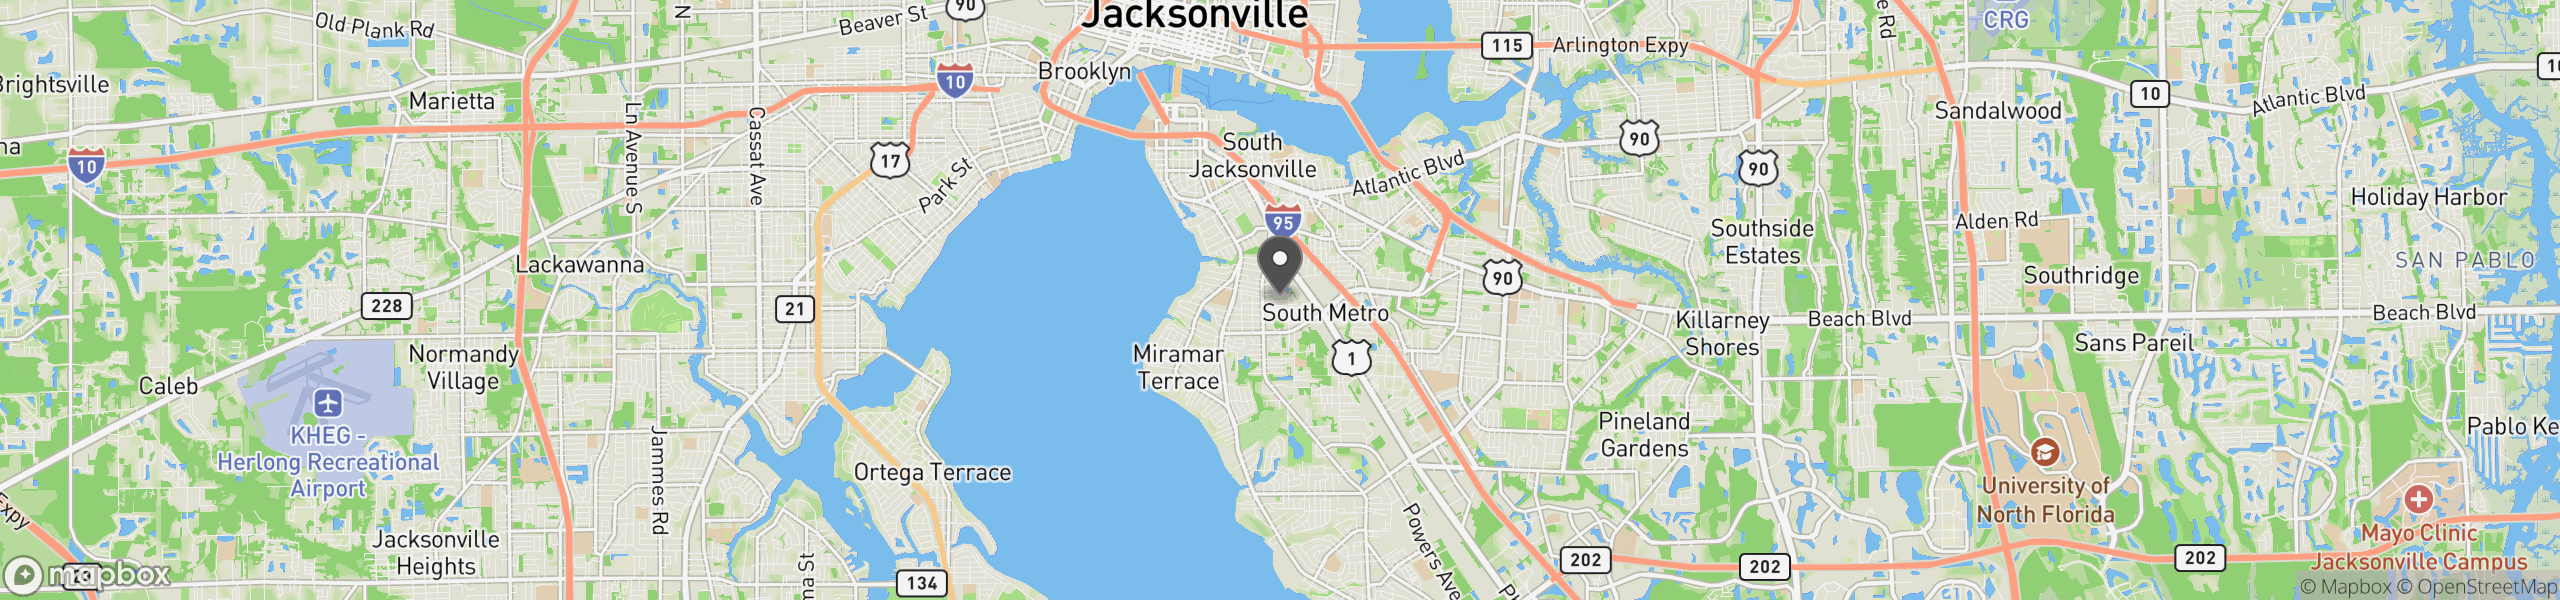 Jacksonville, FL